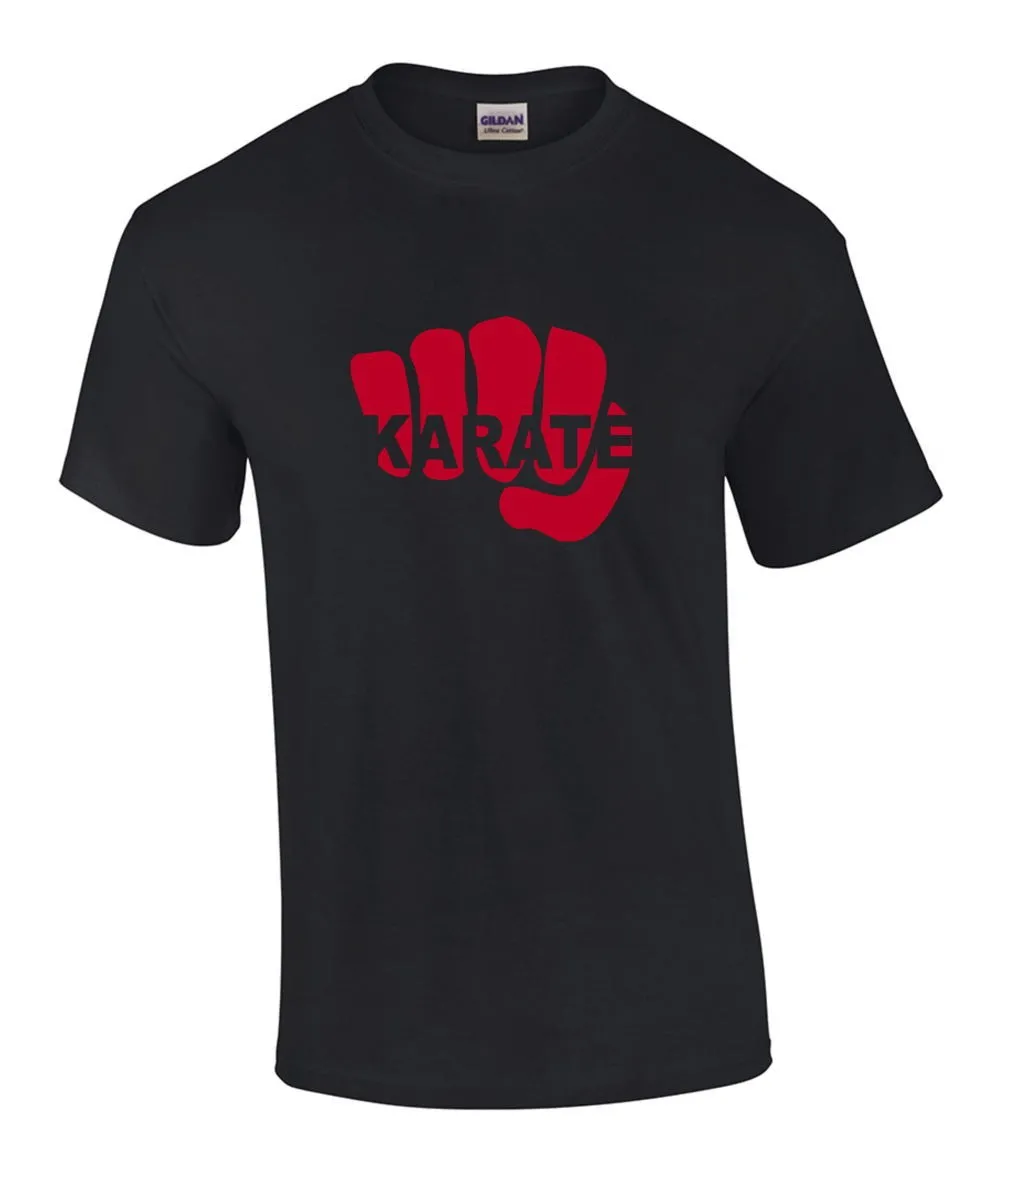 T-shirt Karate Fist sort